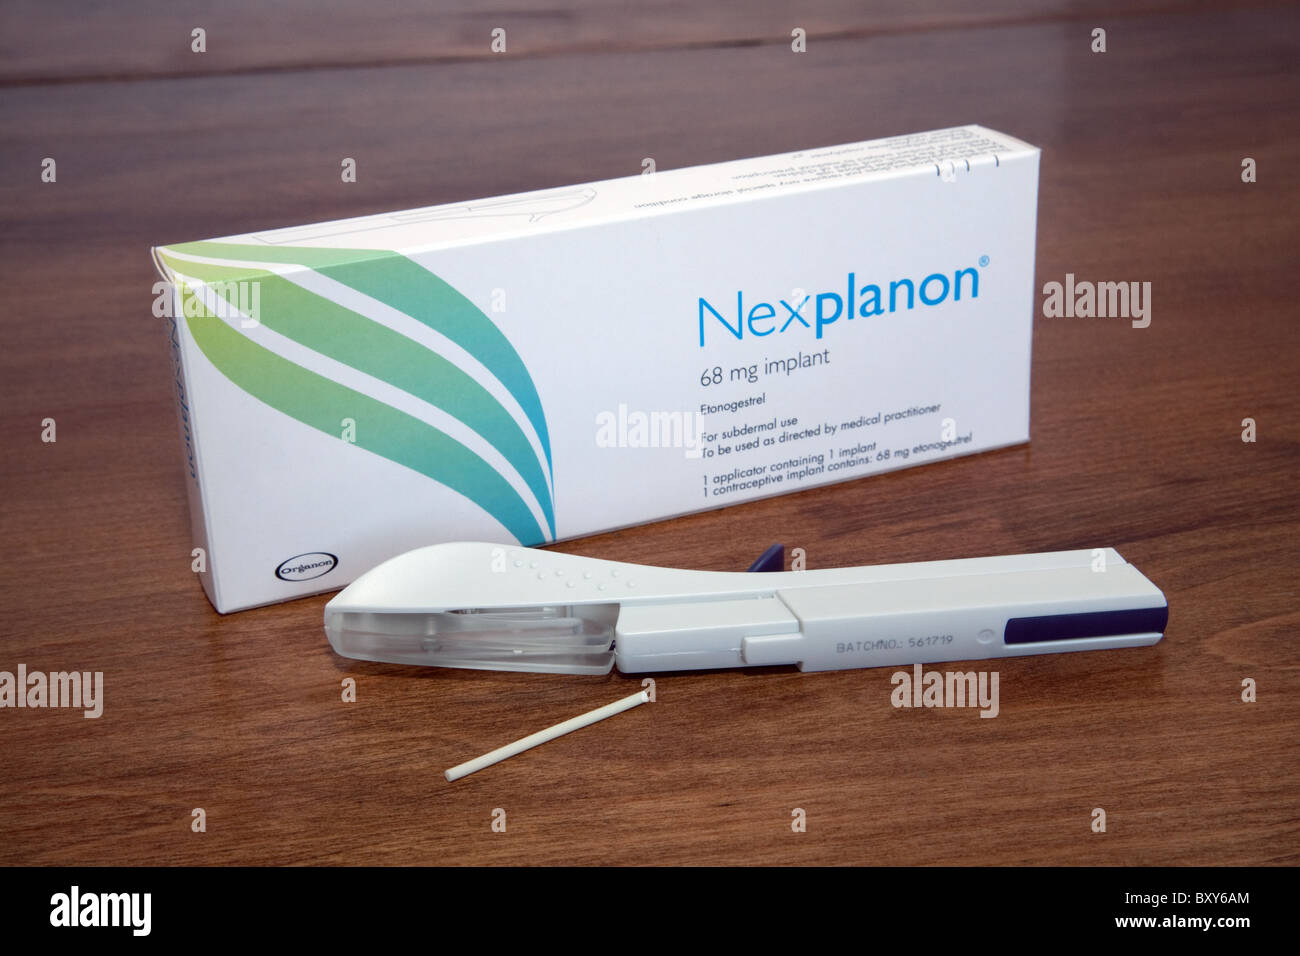 La femmina Nexplanon a lungo termine impianto contraccettivo per agisce lungo la contraccezione reversibile Foto Stock